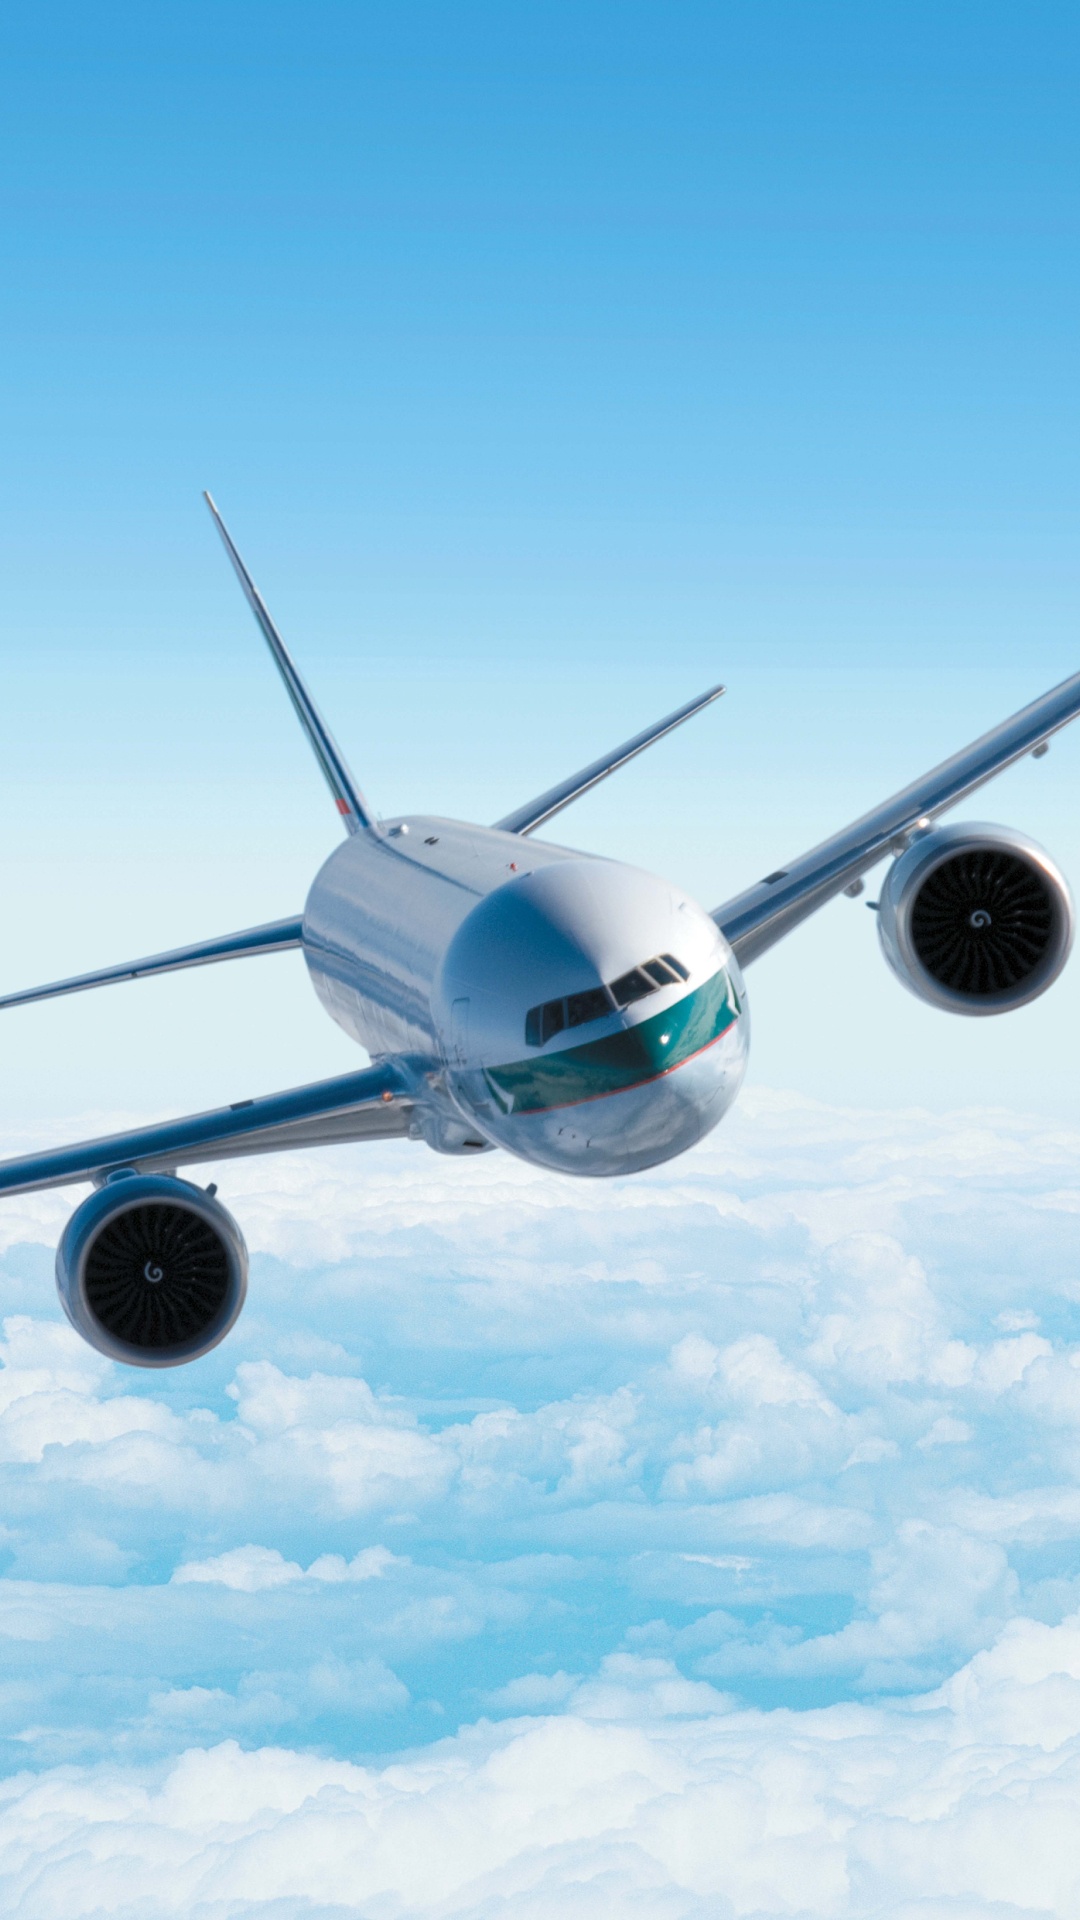 Weißes Flugzeug in Der Luft Unter Blauem Himmel Tagsüber. Wallpaper in 1080x1920 Resolution